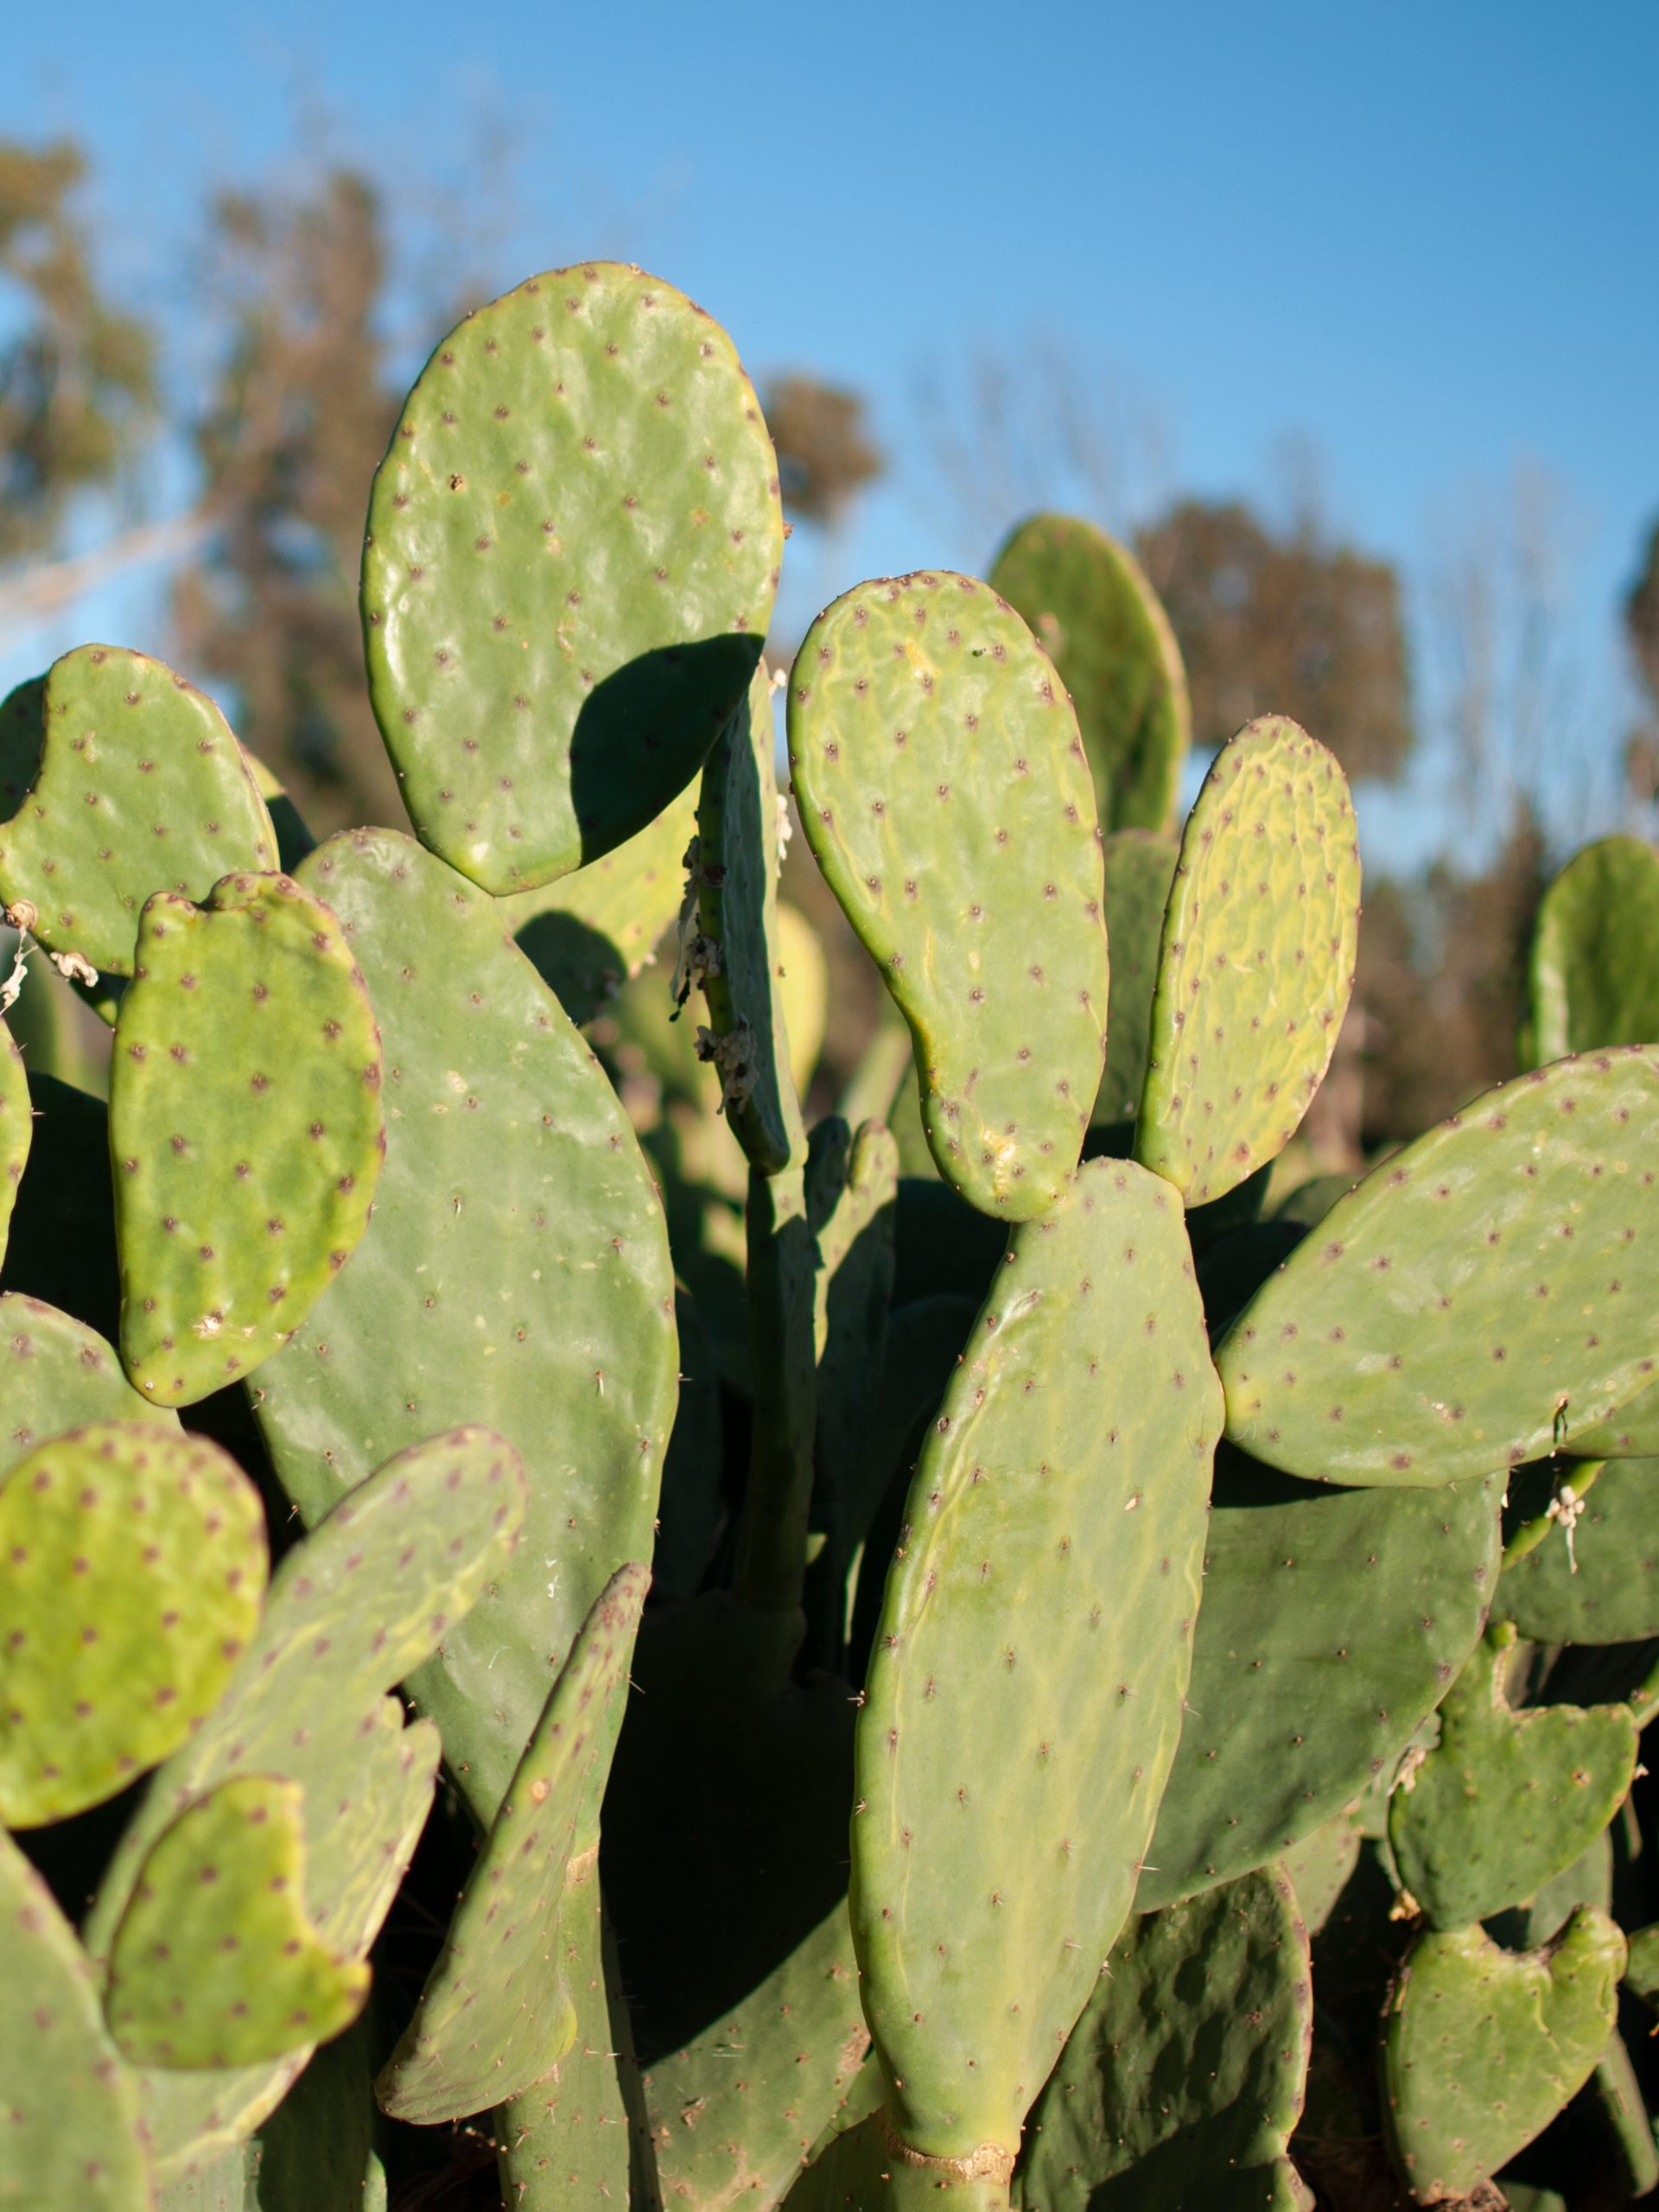 Fruit d'un haut savoir-faire, le cuir végan CAIRE en matière végétale de cactus du Mexique matériau naturel innovant écologique de qualité